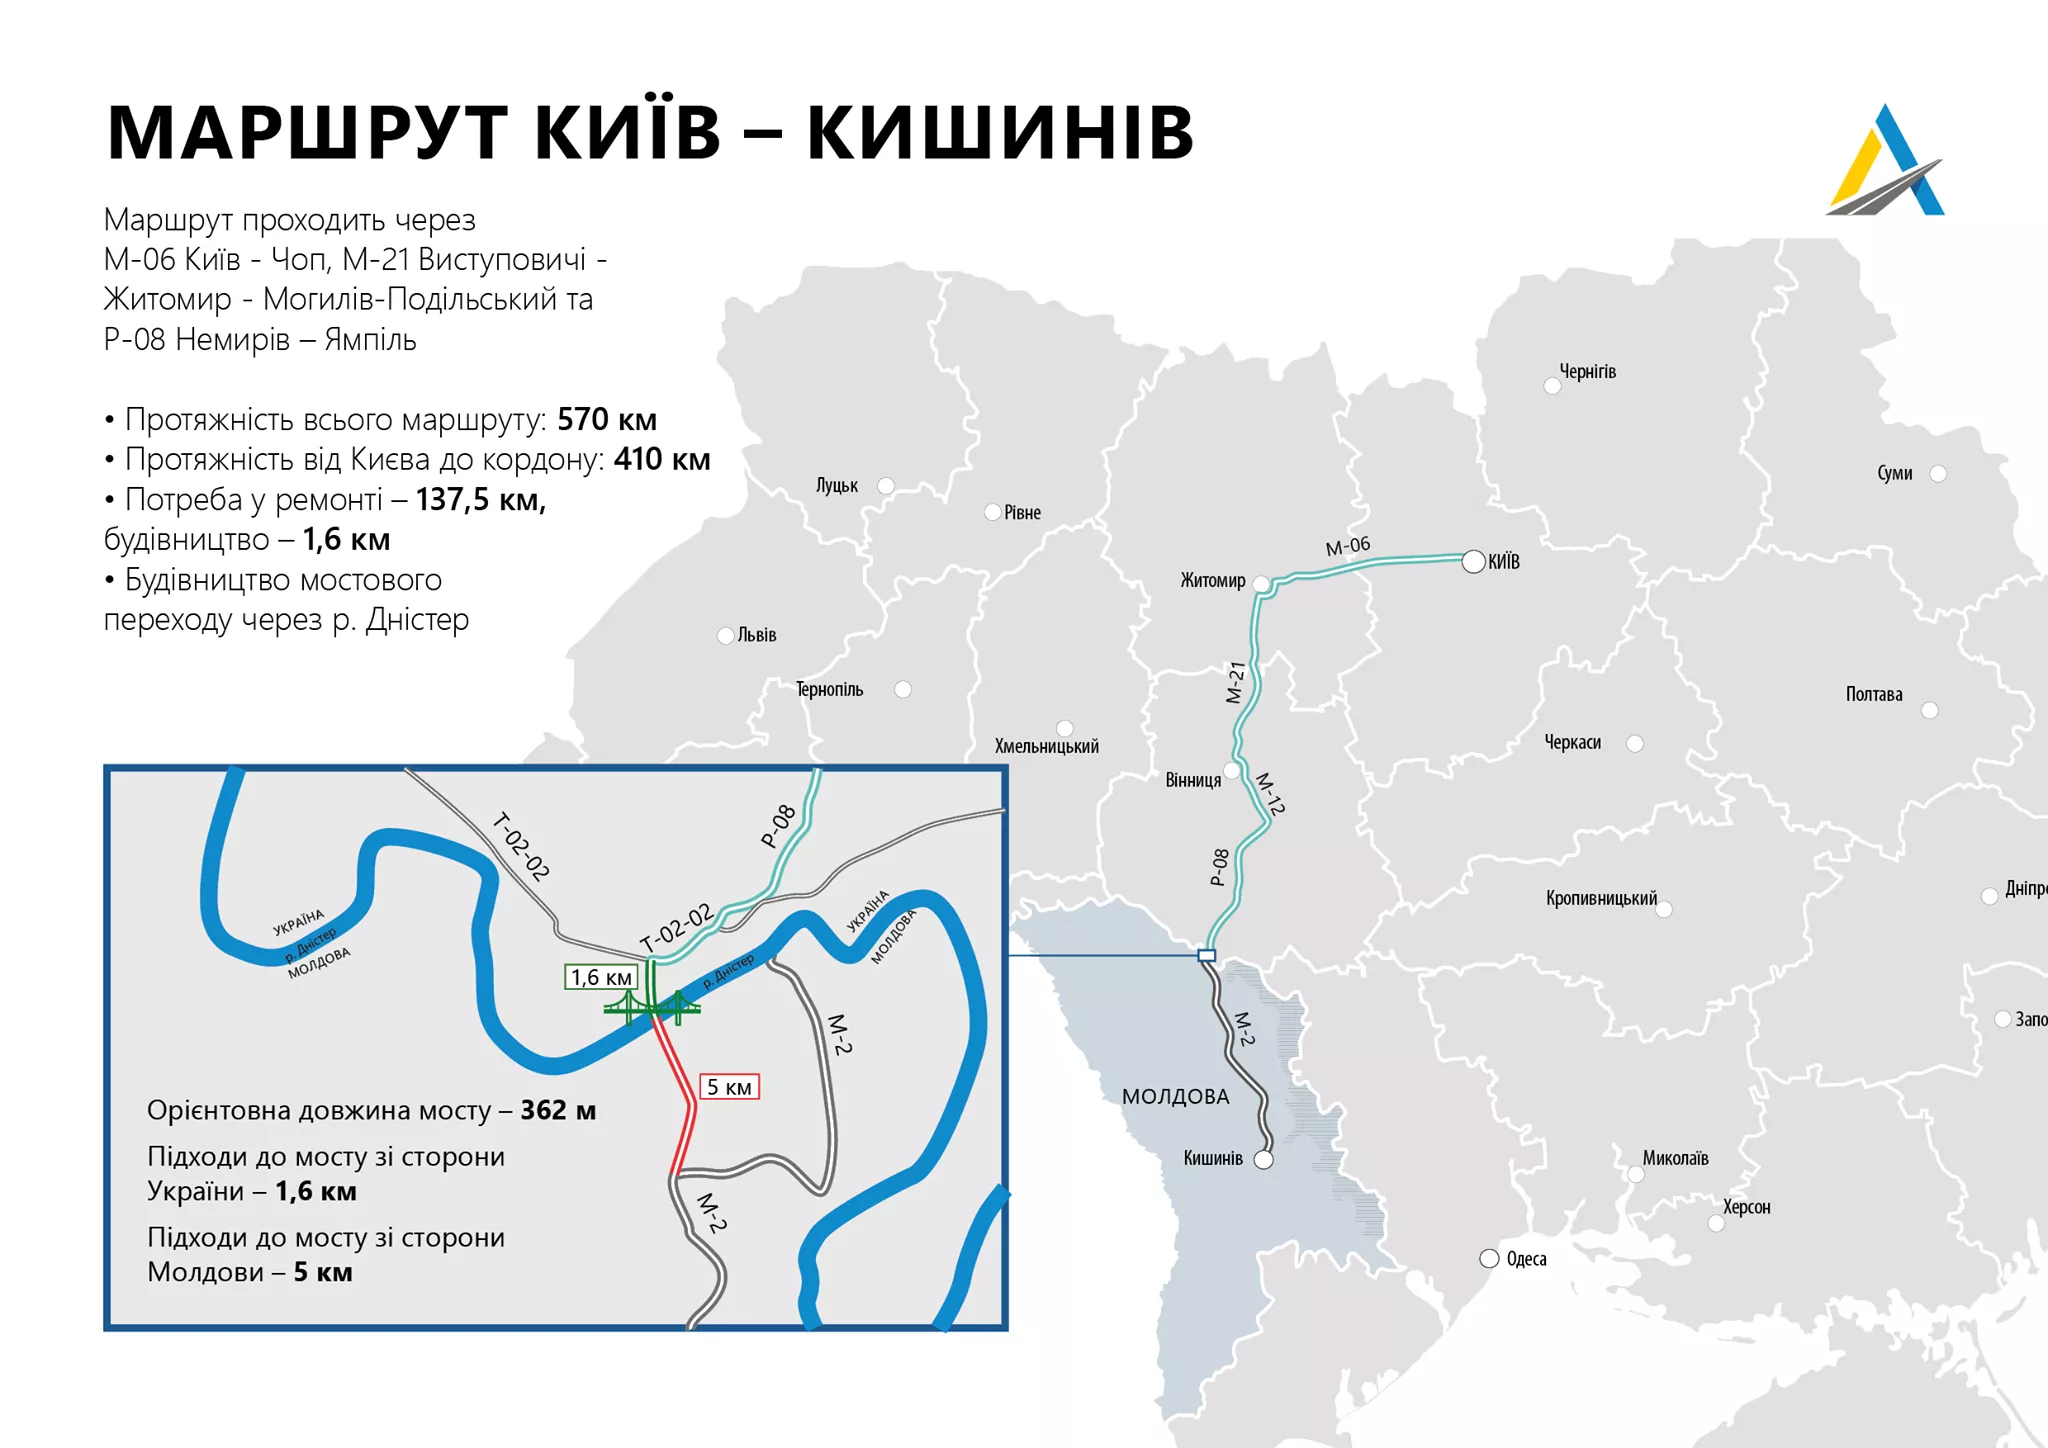 Дорога Немирів – Ямпіль – це частина маршруту Київ – Кишинів 